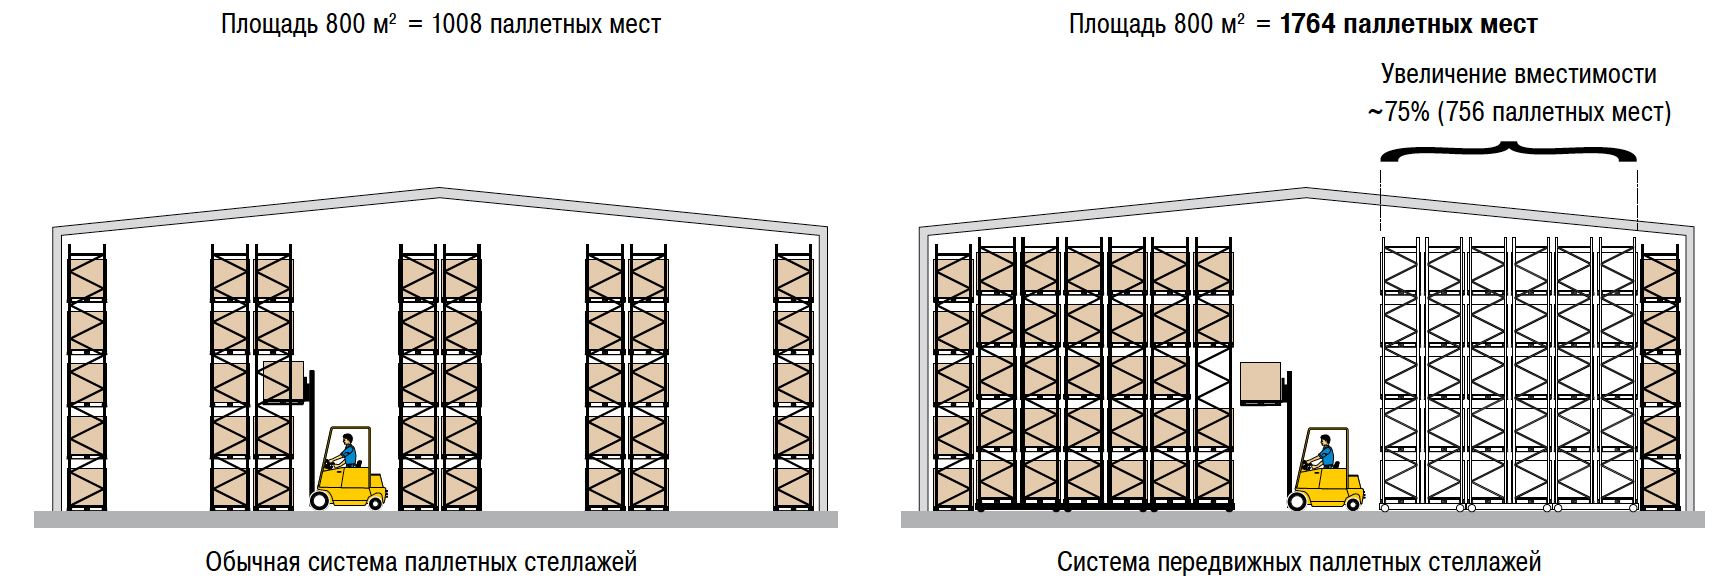 План стеллажа. Складской стеллажный комплекс (система r 4000). Схема расстановки паллетных стеллажей. Схема расстановки складских стеллажей. Стеллаж паллетный (Размеры (ВXШXГ) В мм: 3000x6675x1100).